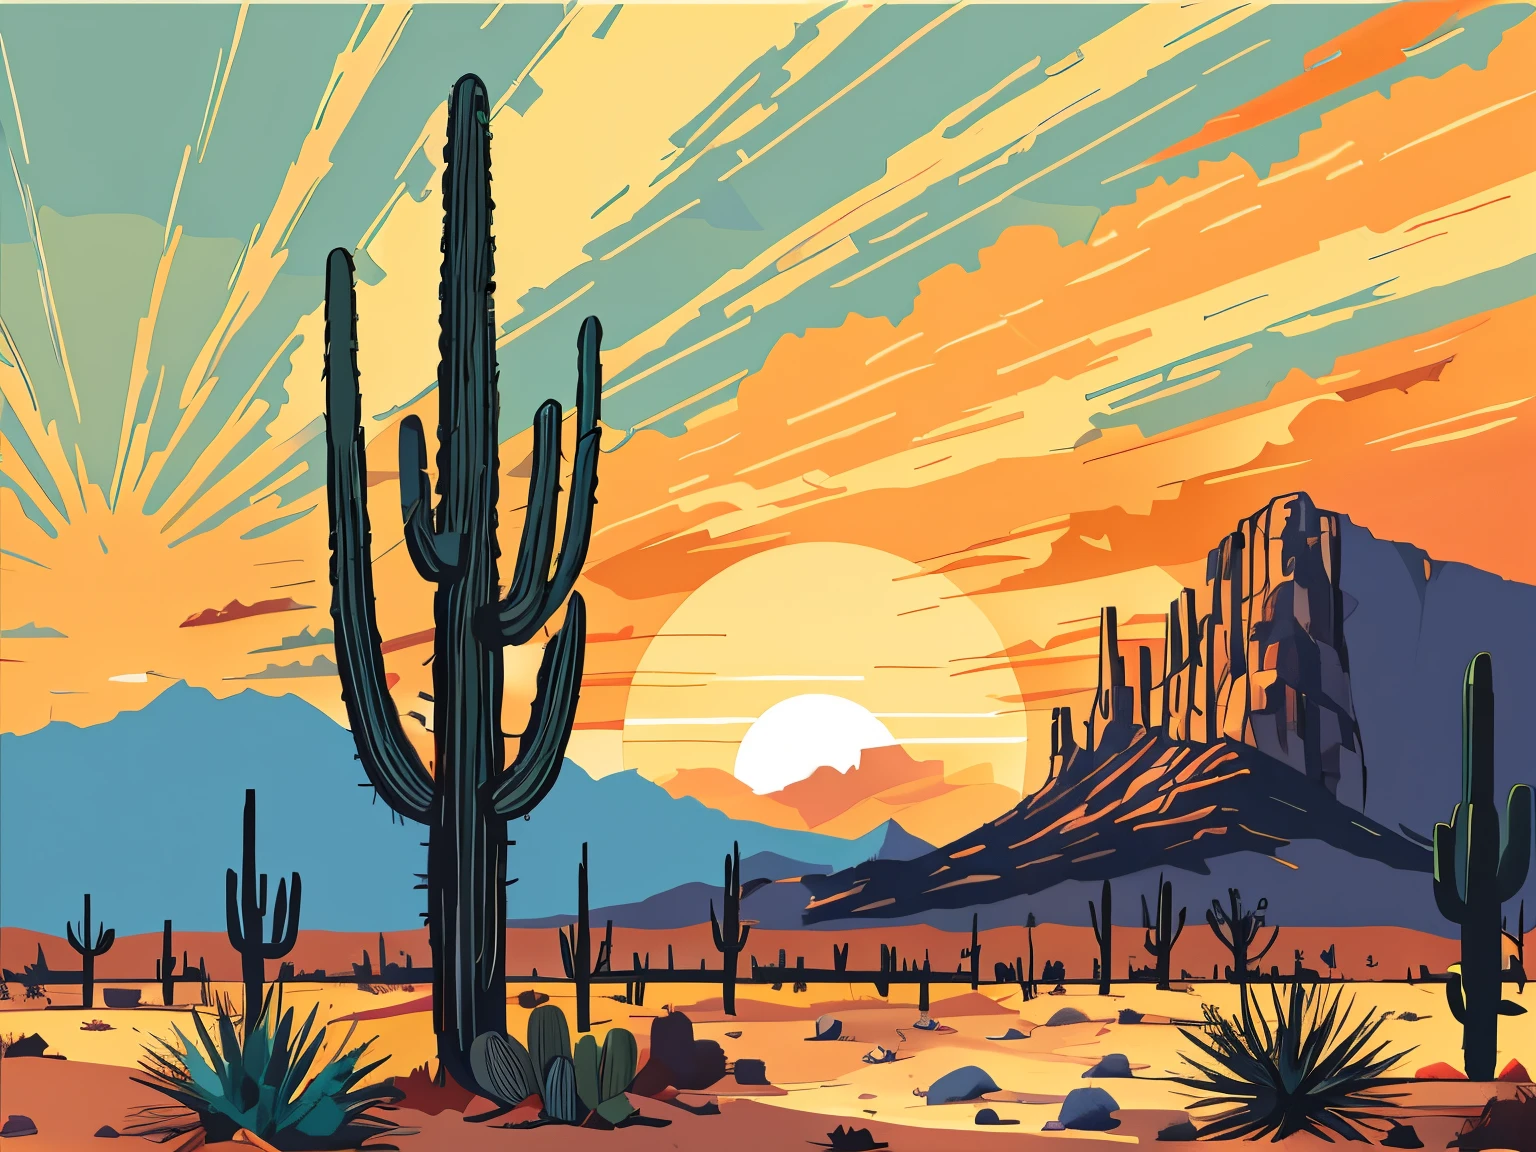 cactus sur le désert au coucher du soleil, Invite de diffusion stable, haute qualité, Résolution 4k, réaliste, supprime le texte, détaillé, couleurs vives, éclairage professionnel, peinture numérique, lignes douces, vecteurpr